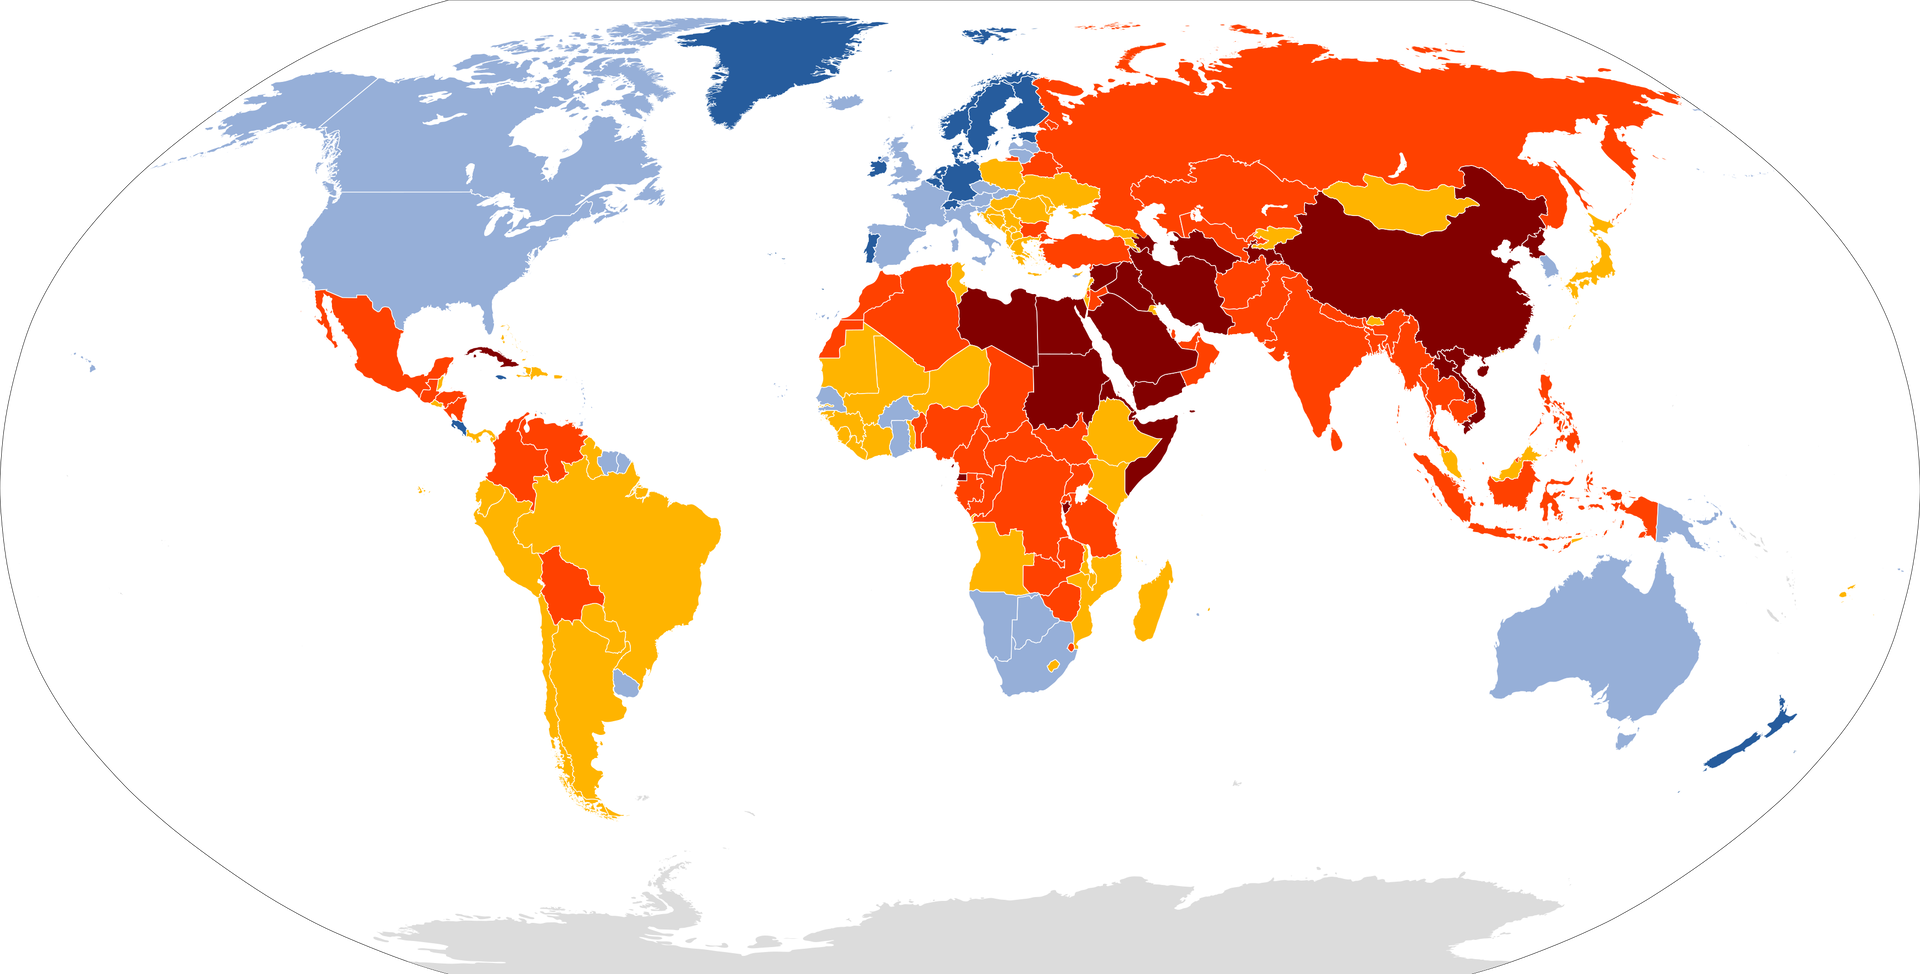 Mapa świata z zaznaczonymi konturami państw wskazująca Światowy Indeks Wolności Prasy 2020 roku według organizacji Reporterzy bez Granic. Dobra sytuacja jest na Grenlandii, w Szwecji, Norwegii, Estonii, Niemczech, Belgii, Niderlandach, Szwajcarii, Irlandii, Portugalii. Zadawalająca sytuacja jest w krajach: Kanada, USA, Surinam, Urugwaj, Hiszpania, Wielka Brytania, Włochy, Austria, Czechy, Słowacja, Litwa, Łotwa, Słowenia, Senegal, Burkina Faso, Gwinea, Nikaragua, Botswana, RPA, Australia, Papua Nowa Gwinea. Zauważalne problemy: Ekwador, Peru, Brazylia, Gujana. Paragwaj, Chile, Argentyna, Polska, Ukraina, Węgry, Rumunia, Serbia, Chorwacja, Bośnia i Hercegowina, Czarnogóra, Grecja, Gruzja, Tunezja, Niger, Mali, Mauretania, Etiopia, Gwinea, Sierra Leone, Liberia, Wybrzeże Kości Słoniowej, Kenia, Angola, Malawi, Mozambik, Madagaskar, Lesoto, Mongolia, Japonia, Malezja. Trudna sytuacja: Meksyk, Kolumbia, Wenezuela, Boliwia, Turcja, Sahara Zachodnia, Maroko, Algieria, Czad, Sudan, Nigeria, Czad, Sudan, Kamerun, Republika Środkowo‑Afrykańska, Sudan Południowy, Uganda, Demokratyczna Republika Konga, Zambia, Zimbabwe, Syria, Oman, Rosja, Kazachstan, Uzbekistan, Afganistan, Pakistan, Indie, Bangladesz, Birma, Tajlandia, Kambodża, Laos, Wietnam, Indonezja. Bardzo poważna sytuacja: Irak, Iran, Uzbekistan, Arabia Saudyjska, Jemen, Libia, Egipt, Sudan, Somalia, Chiny.